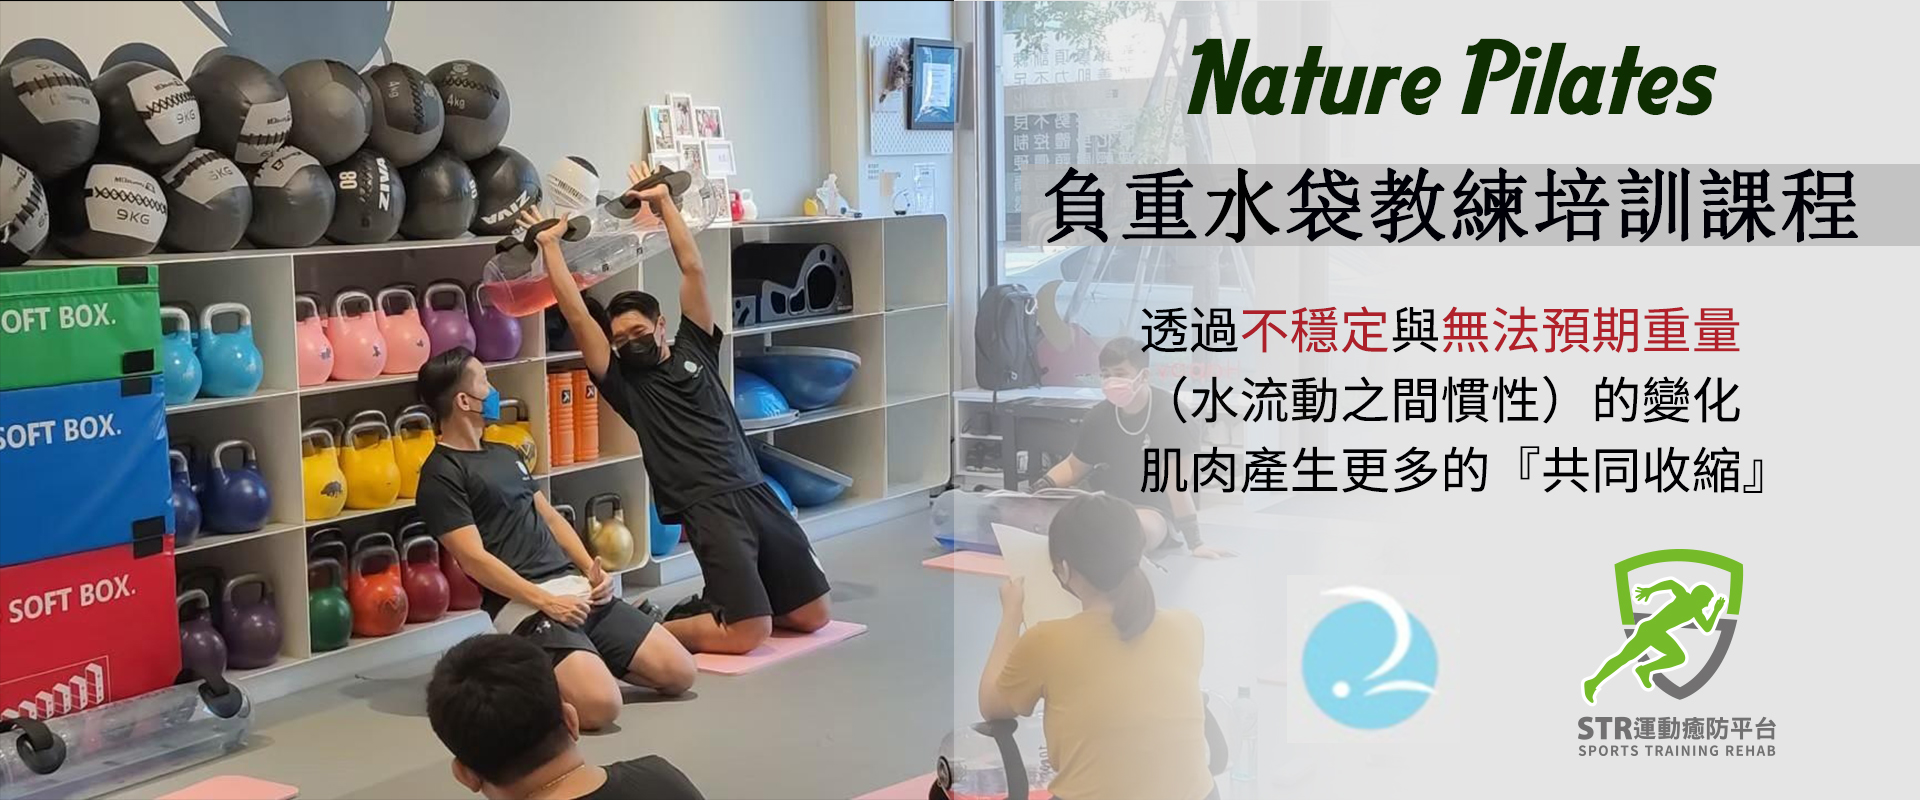 【2022】【Nature Pilates負重水袋教練培訓課程】6/05(高雄)